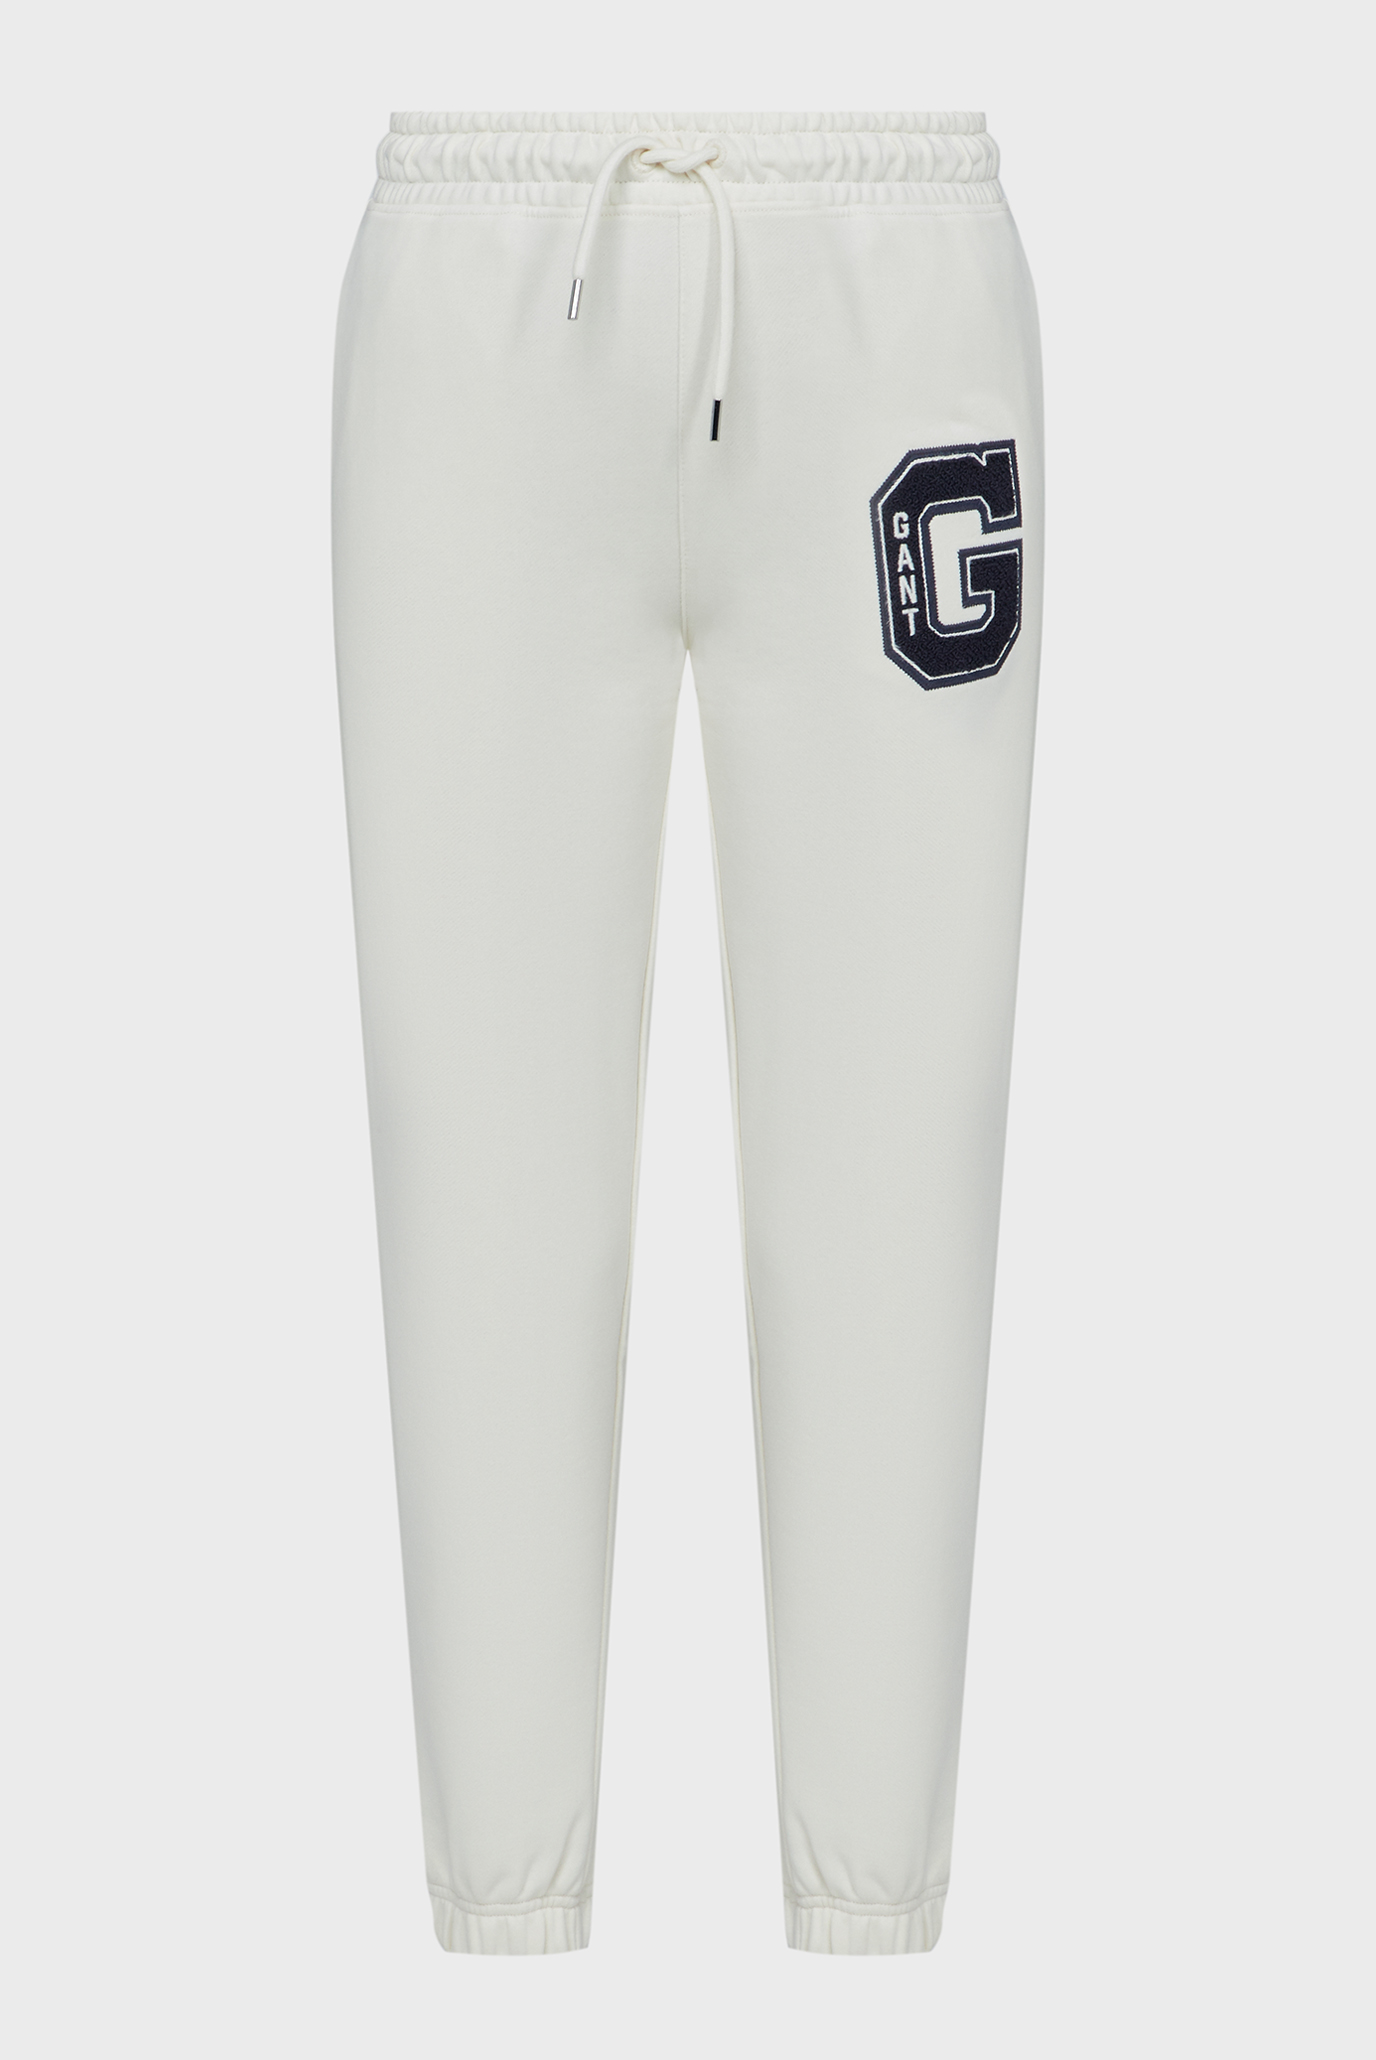 Жіночі білі спортивні штани REG G SWEATPANTS 1